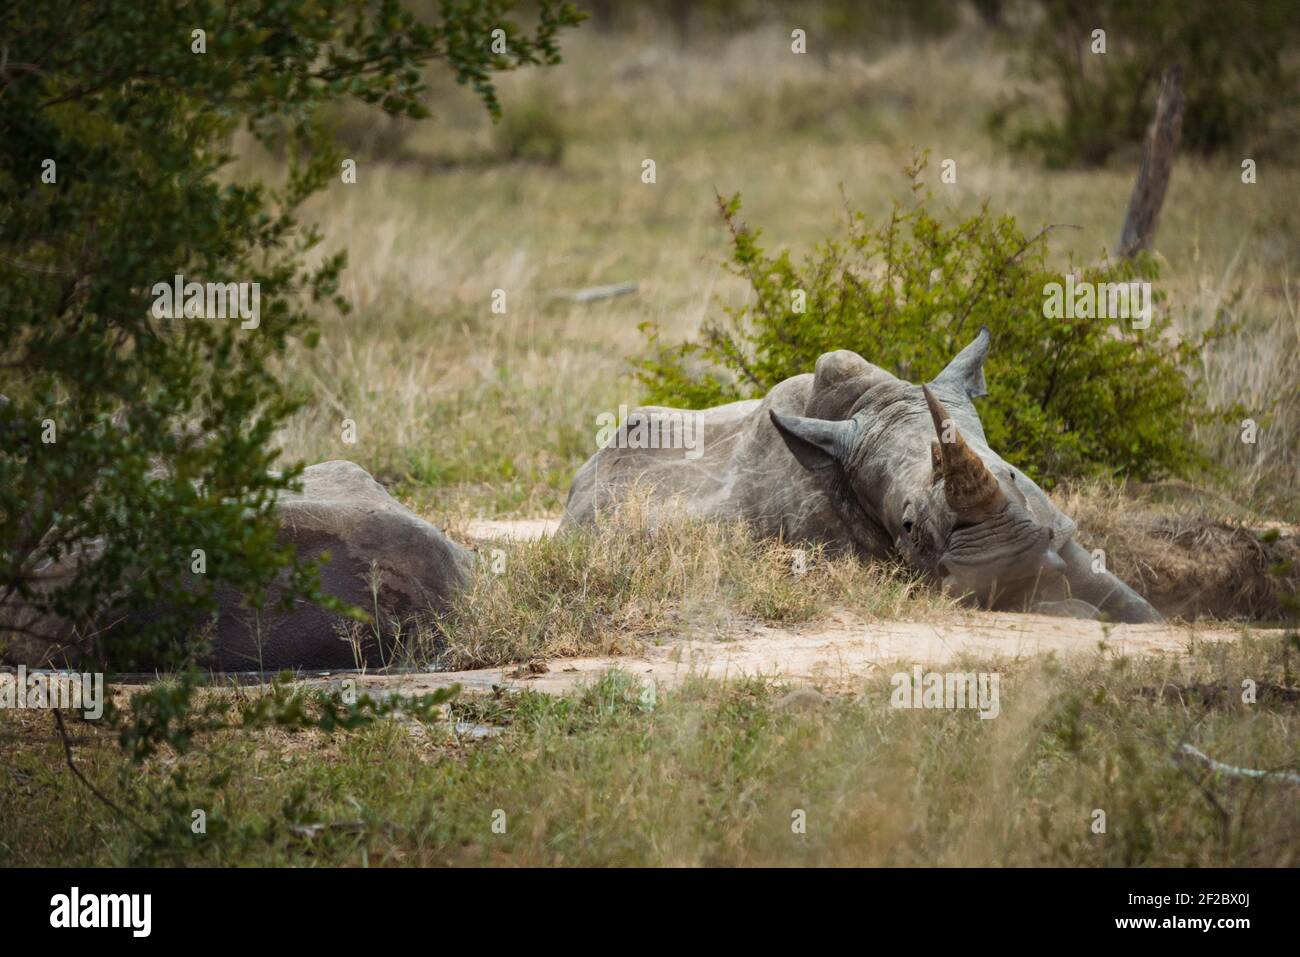 Rinoceronte Blanco del Sur descansando en el Parque Nacional Kruger Foto de stock